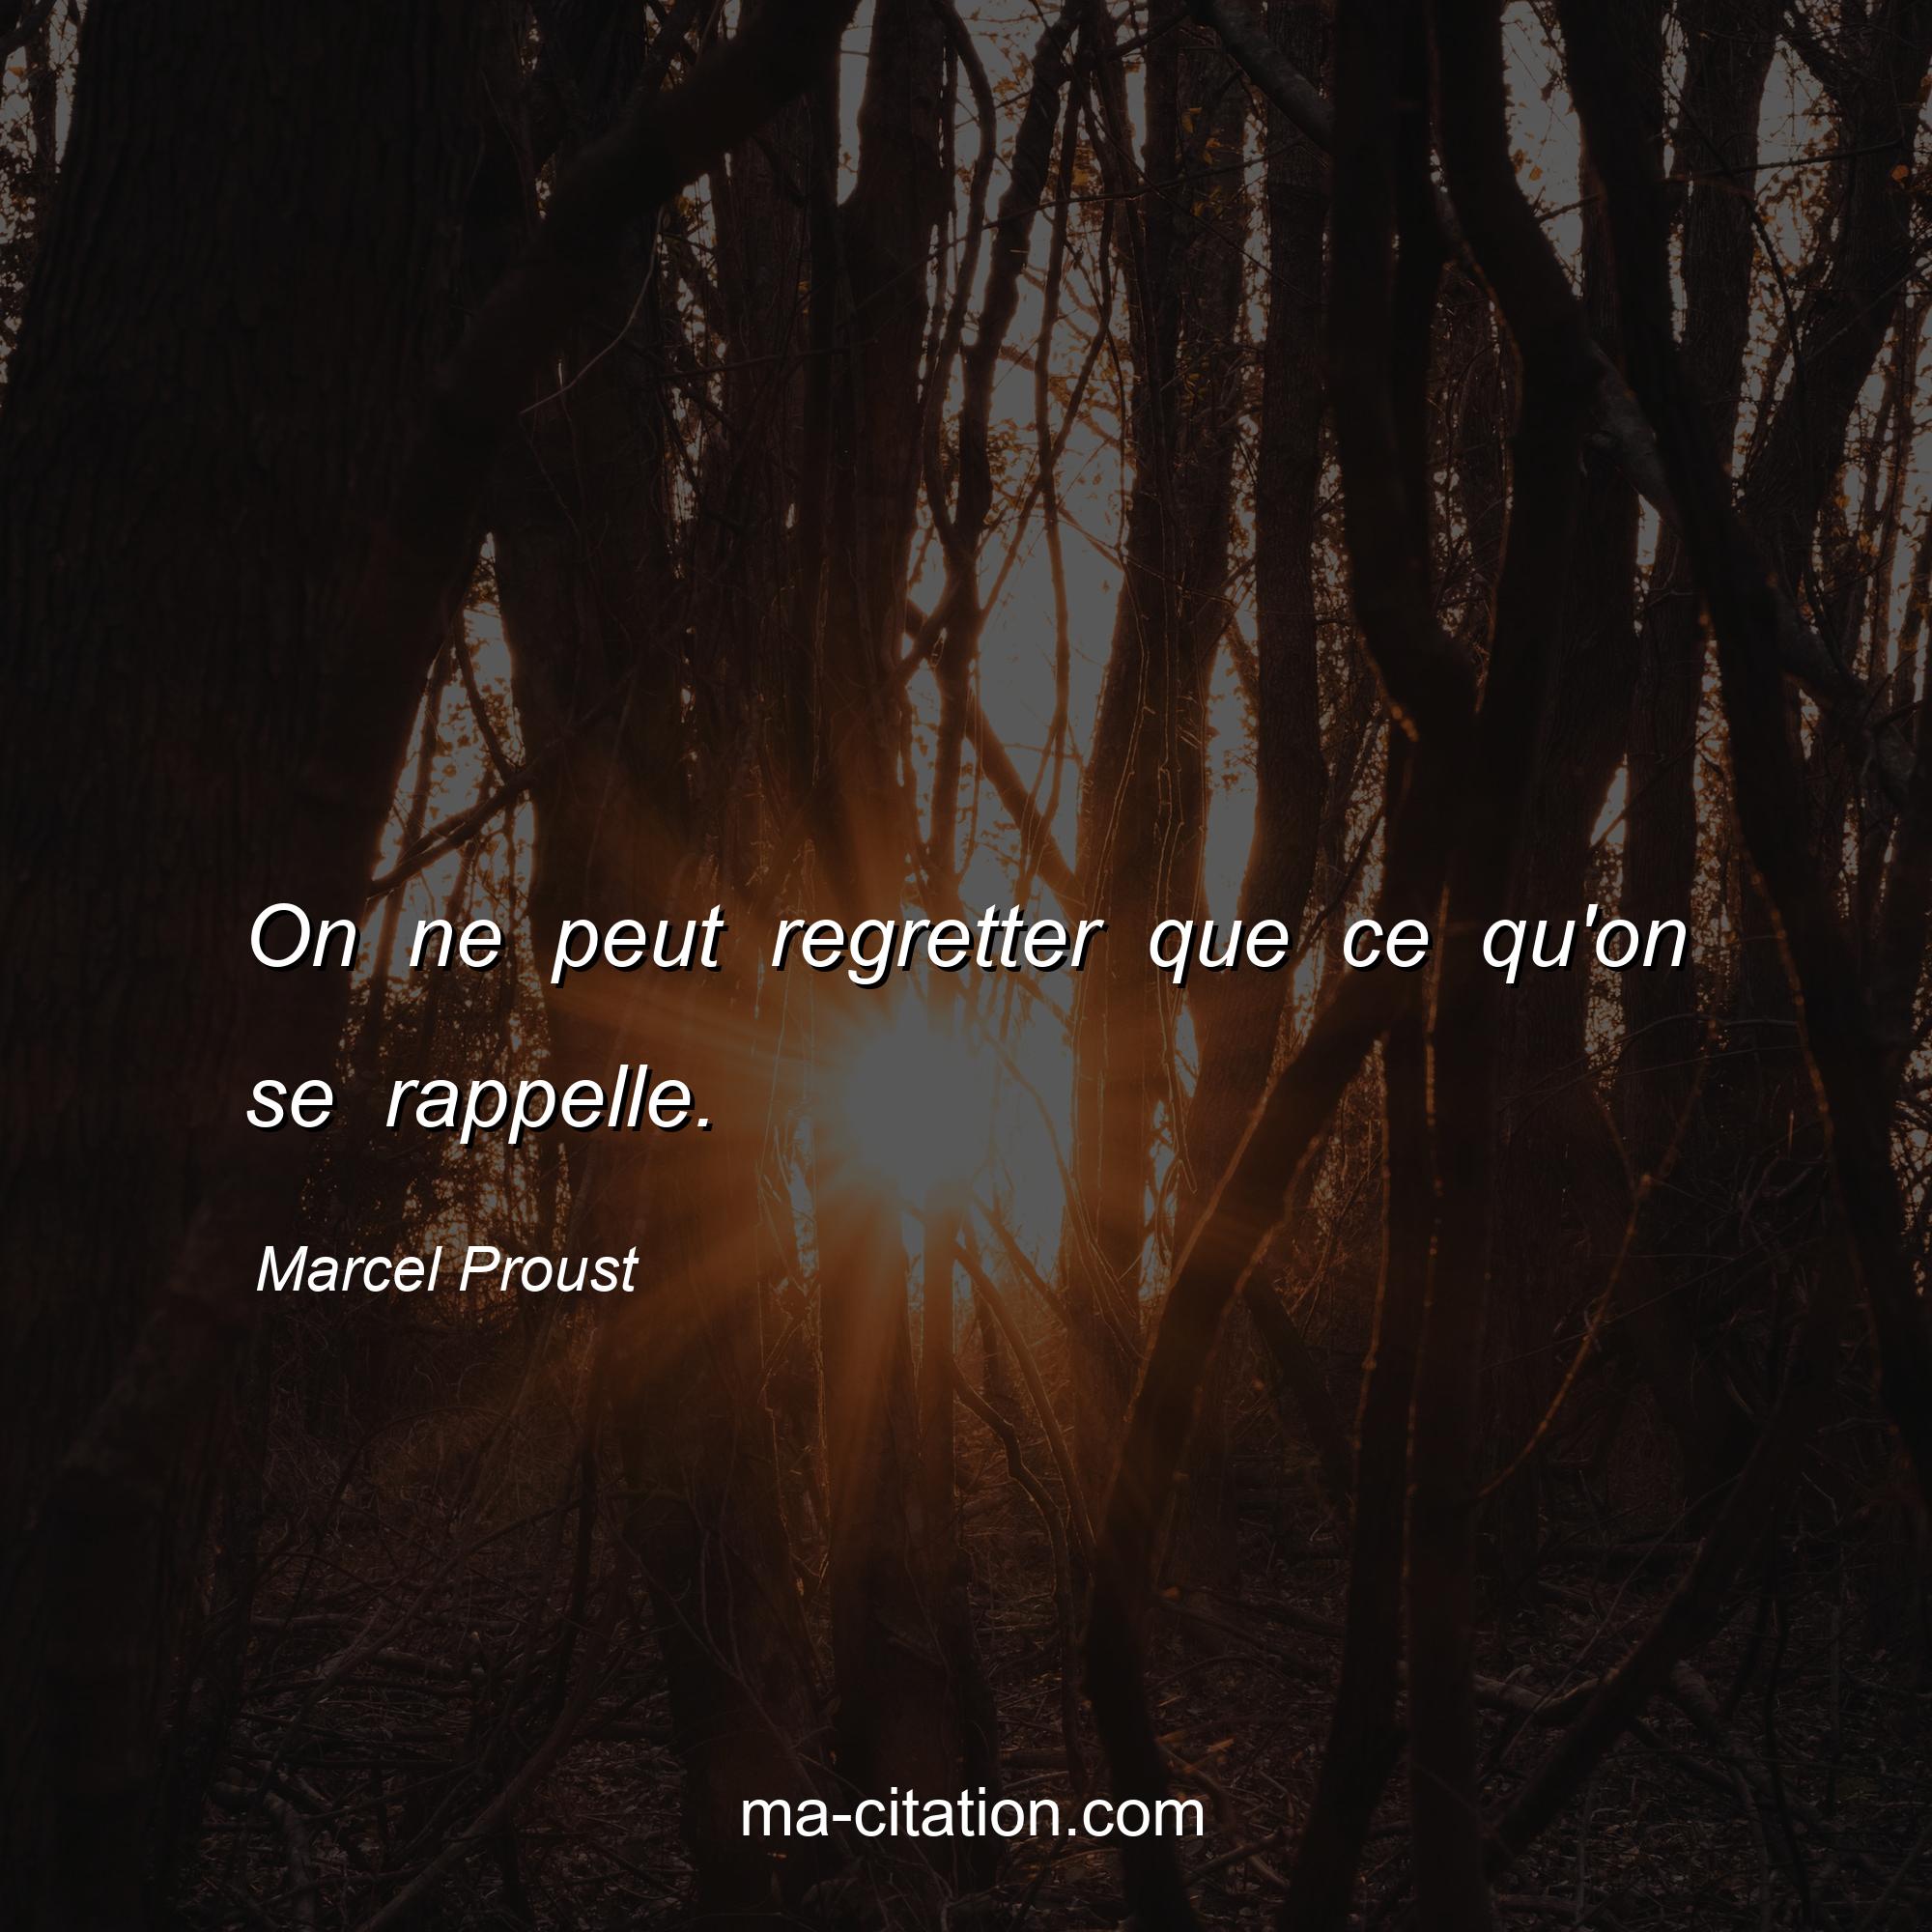 Marcel Proust : On ne peut regretter que ce qu'on se rappelle.